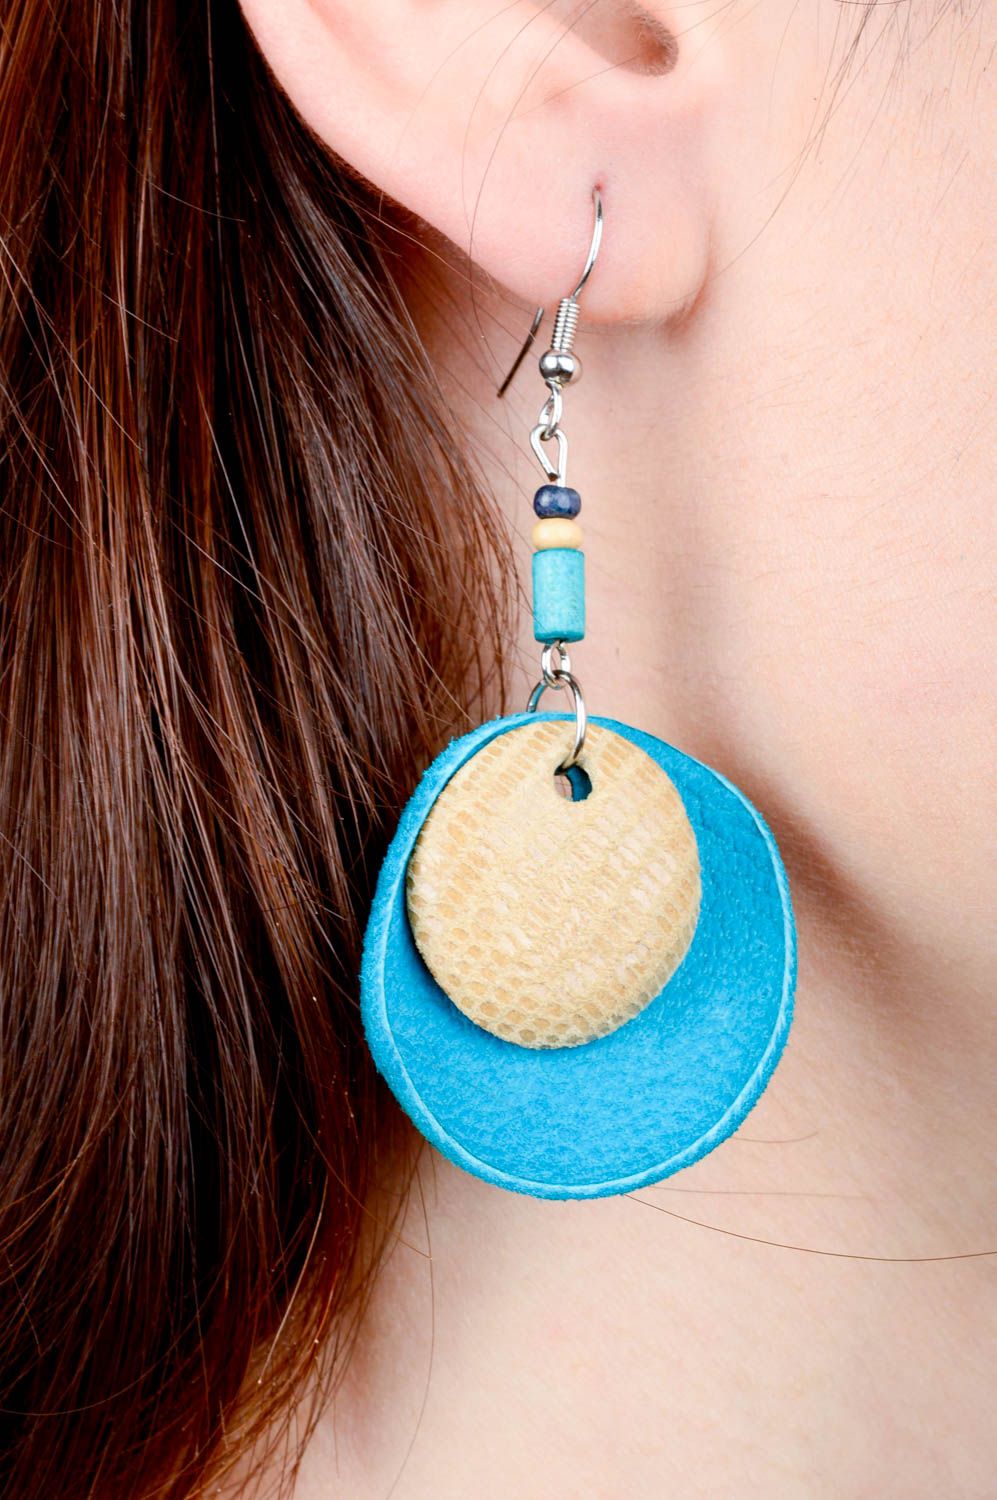 Fashion earrings trendy dangling handmade earrings leather jewelry for women photo 2